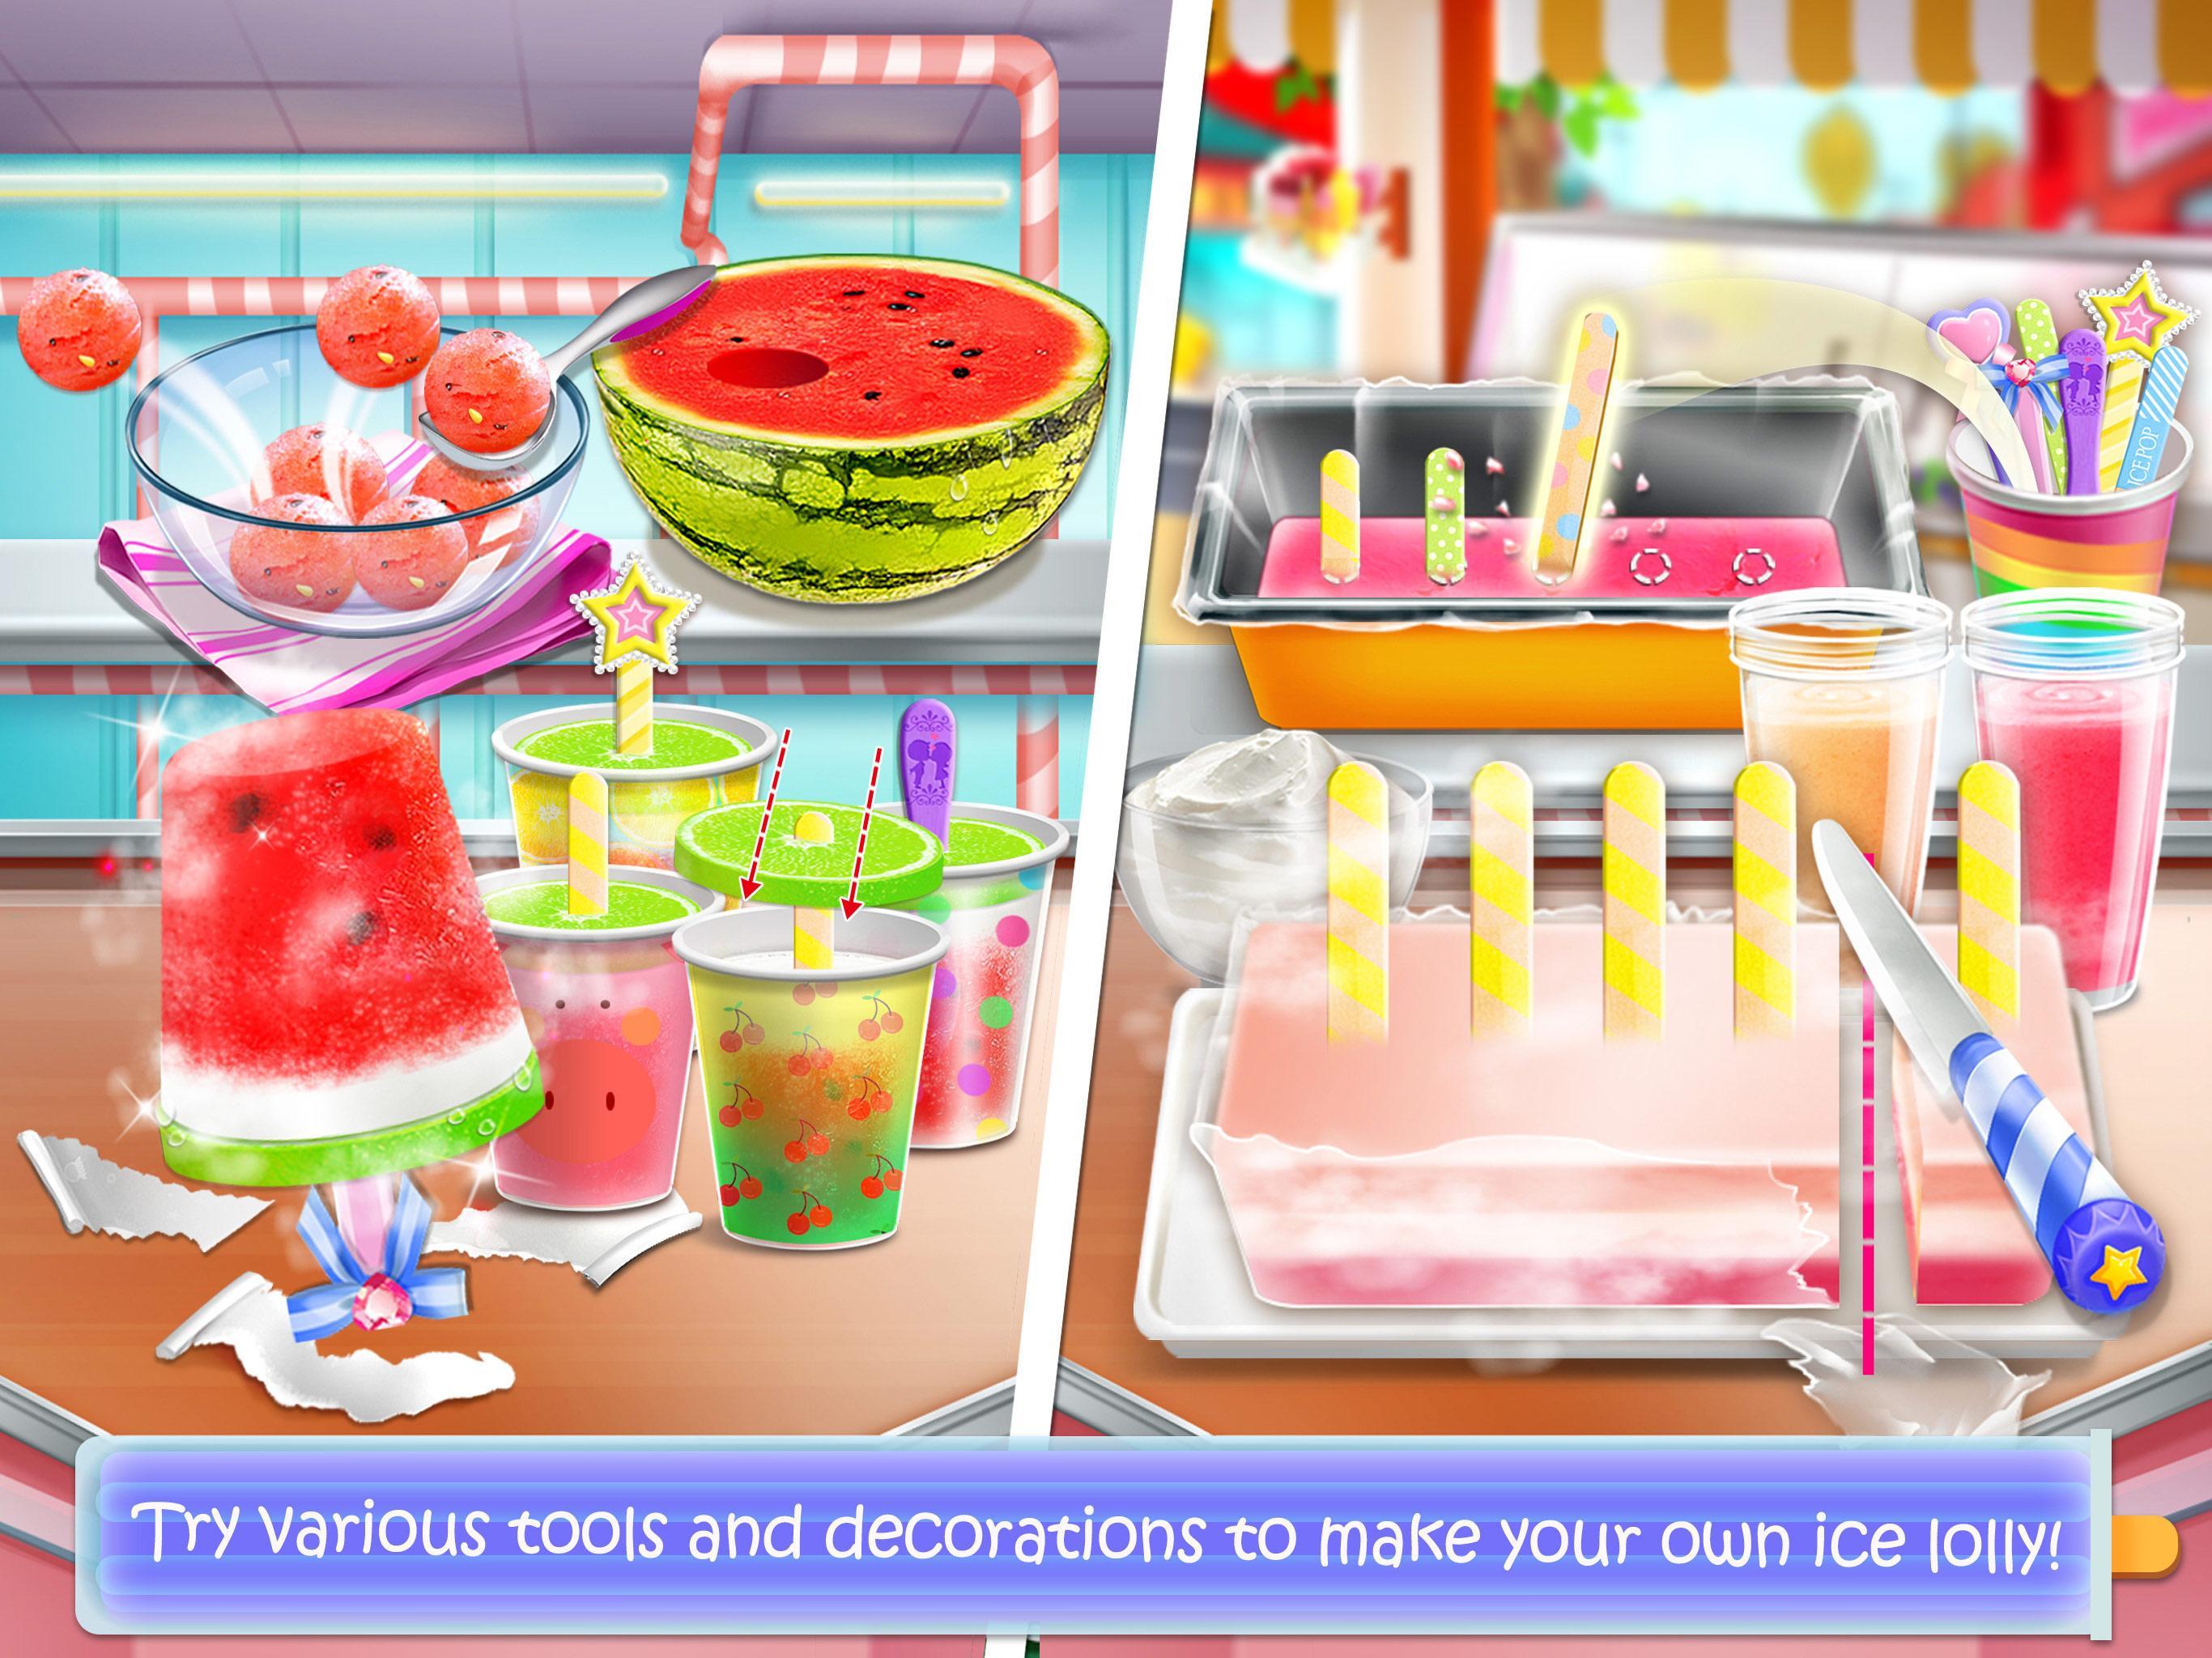 Screenshot 1 of Игры про еду на палочке с мороженым 